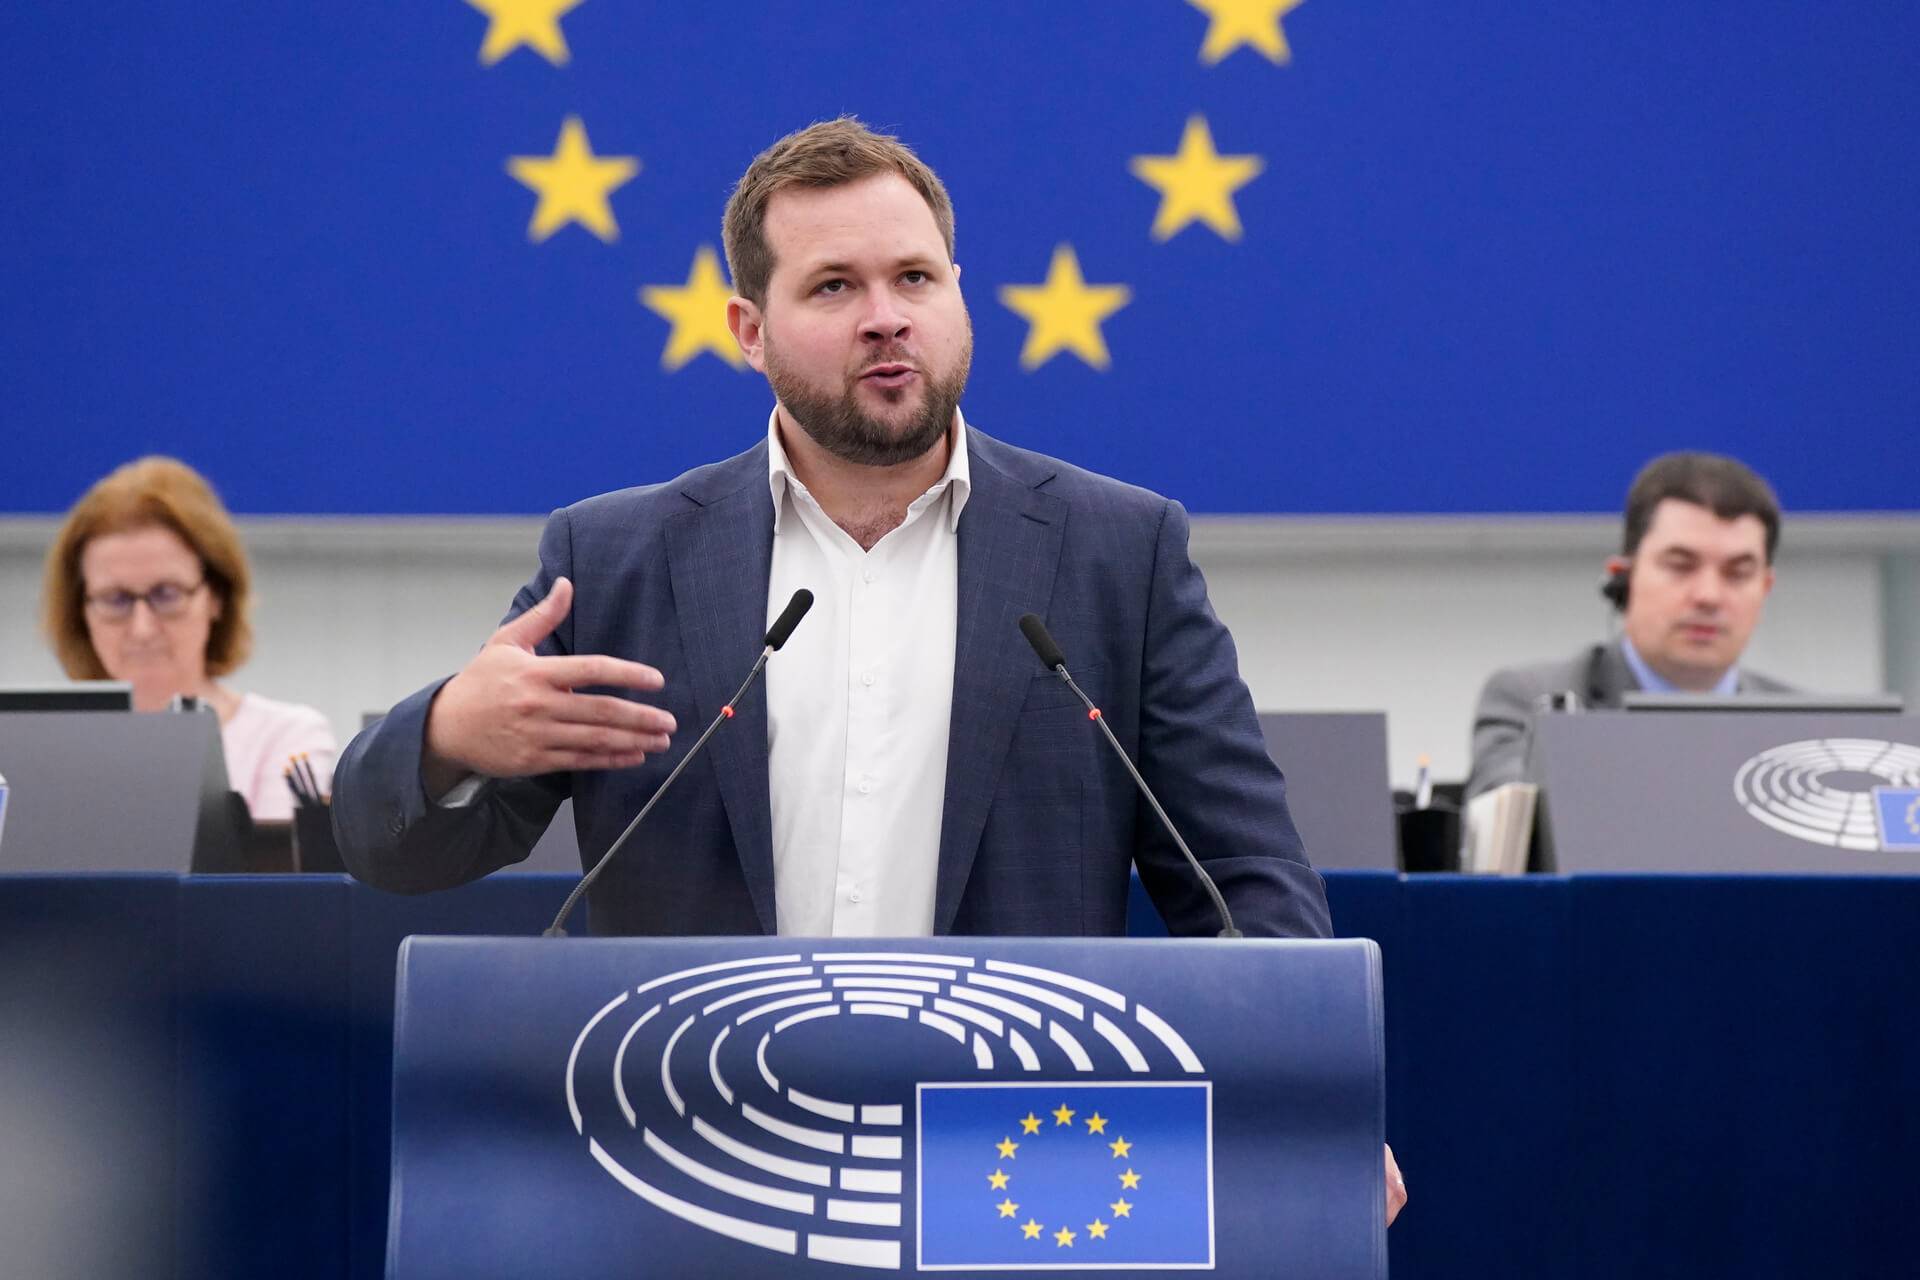 Mężczyzna z krótkimi włosami ciemny blond i krótką brodą stoi za mównicą w sali plenarnej Parlamentu Europejskiego, w tle za nim europejska flaga z gwiazdkami, gestykuluje prawą ręką i przemawia do zebranych europosłów.